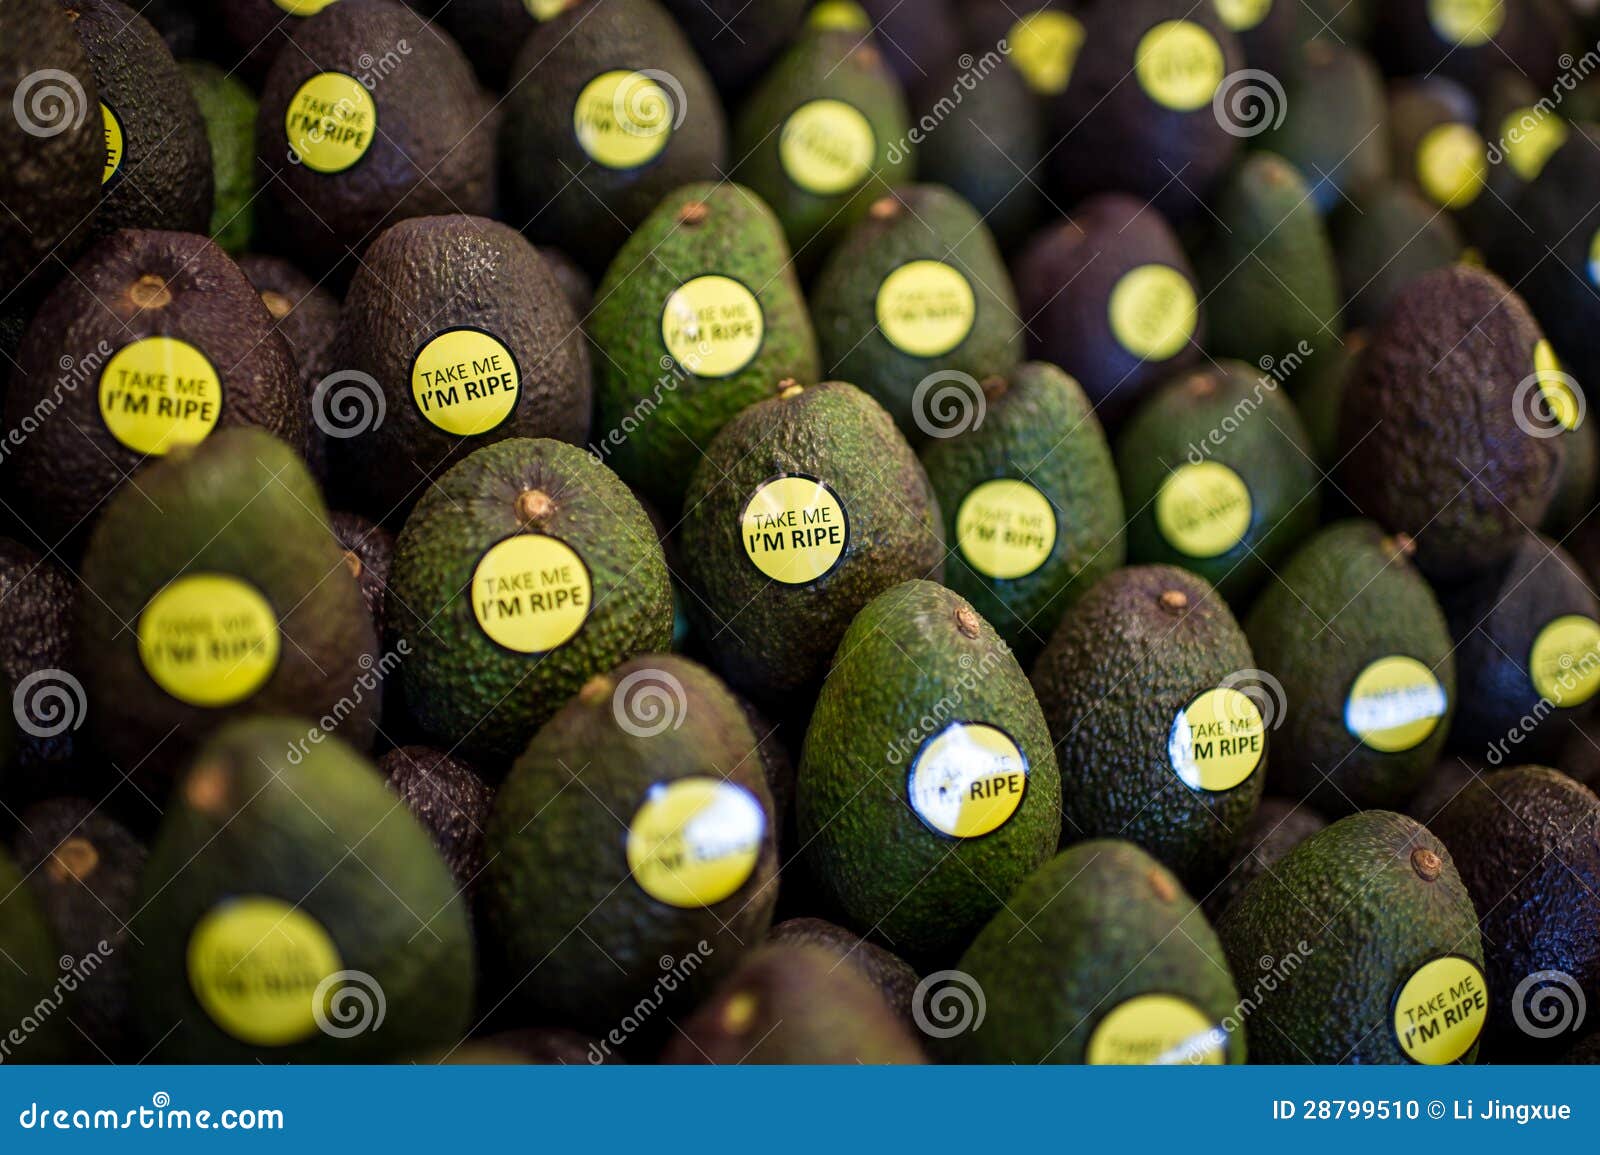 fruit avocado